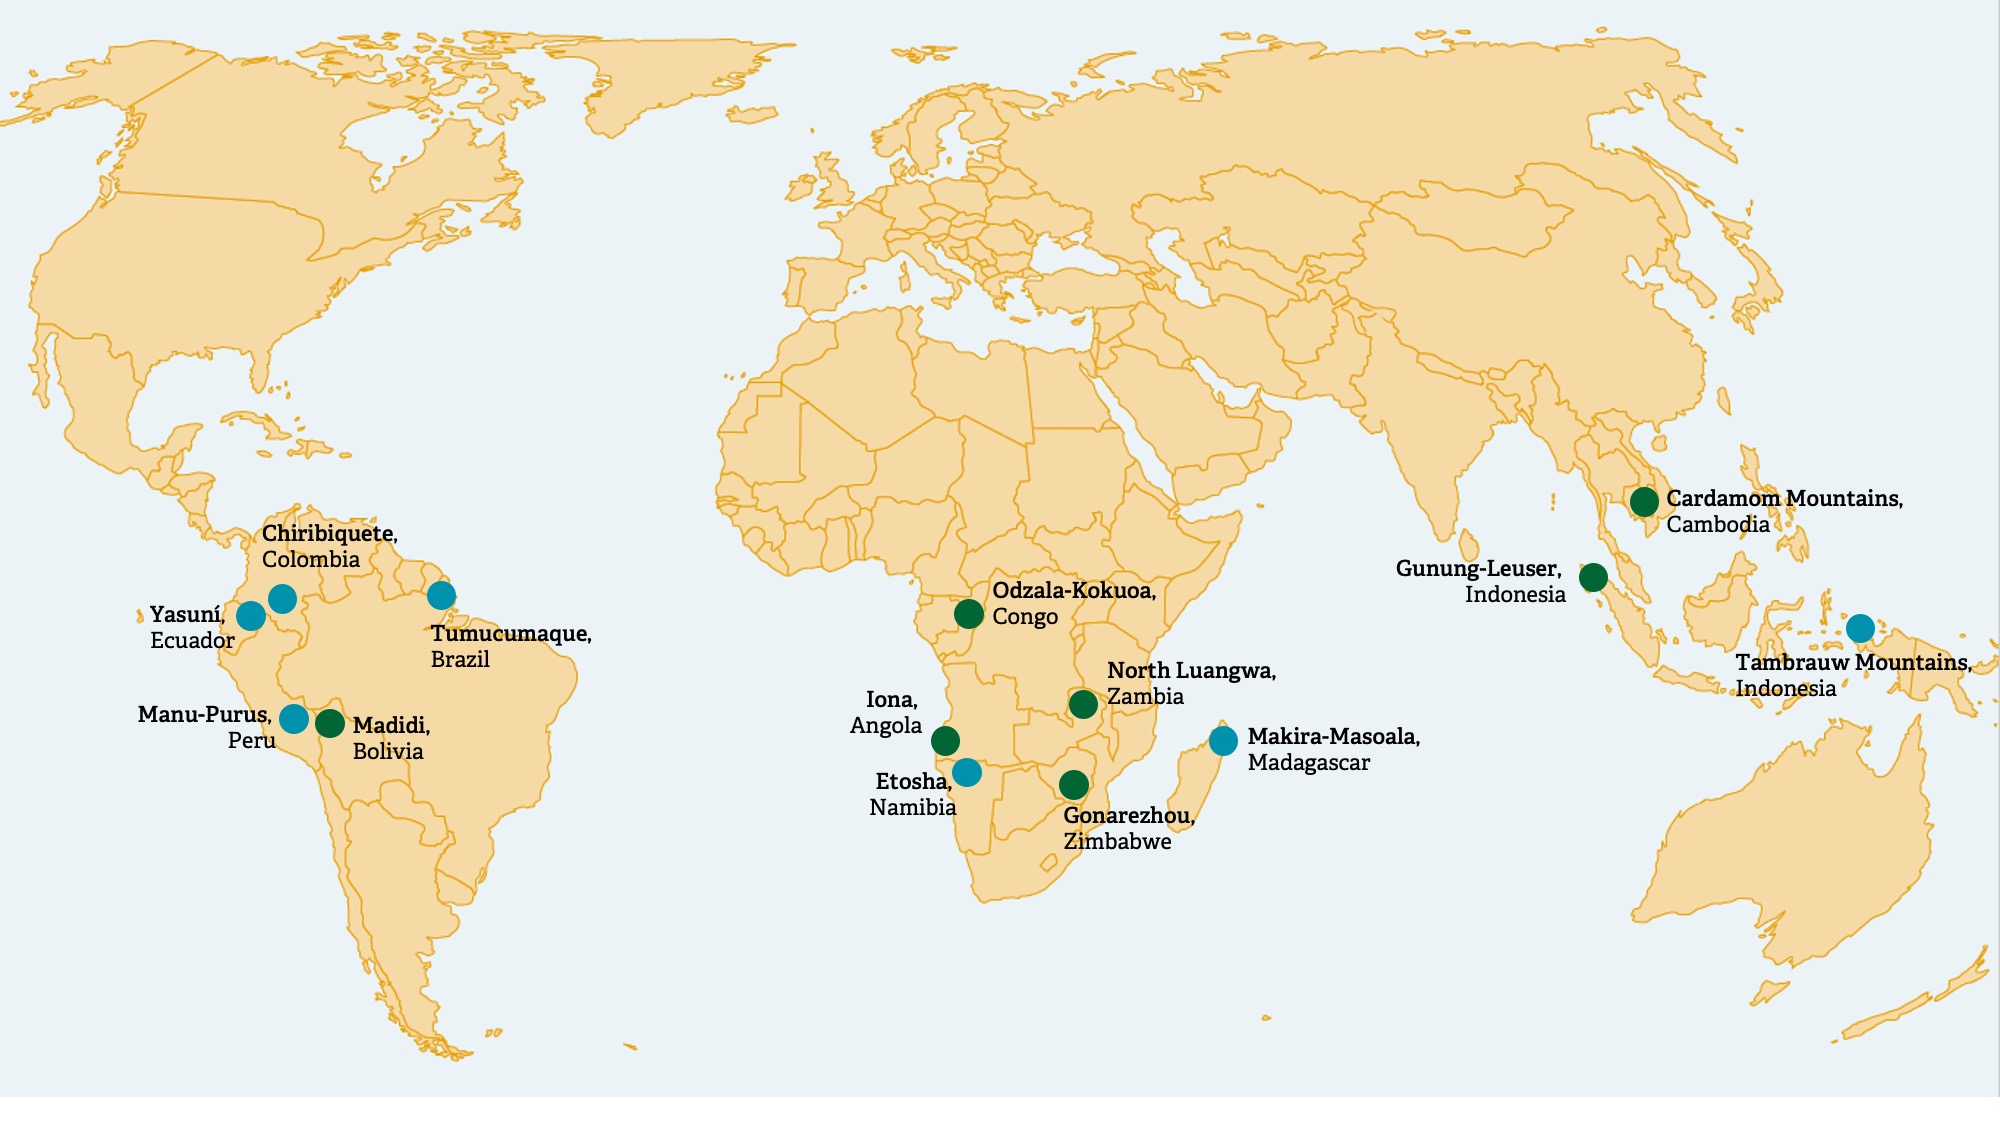 Karte der vom Legacy Landscapes Fund finanzierten Naturlandschaften (Grün: sieben erste, sogenannte Pilotgebiete, Blau: sieben Gebiete nach Ausschreibung)